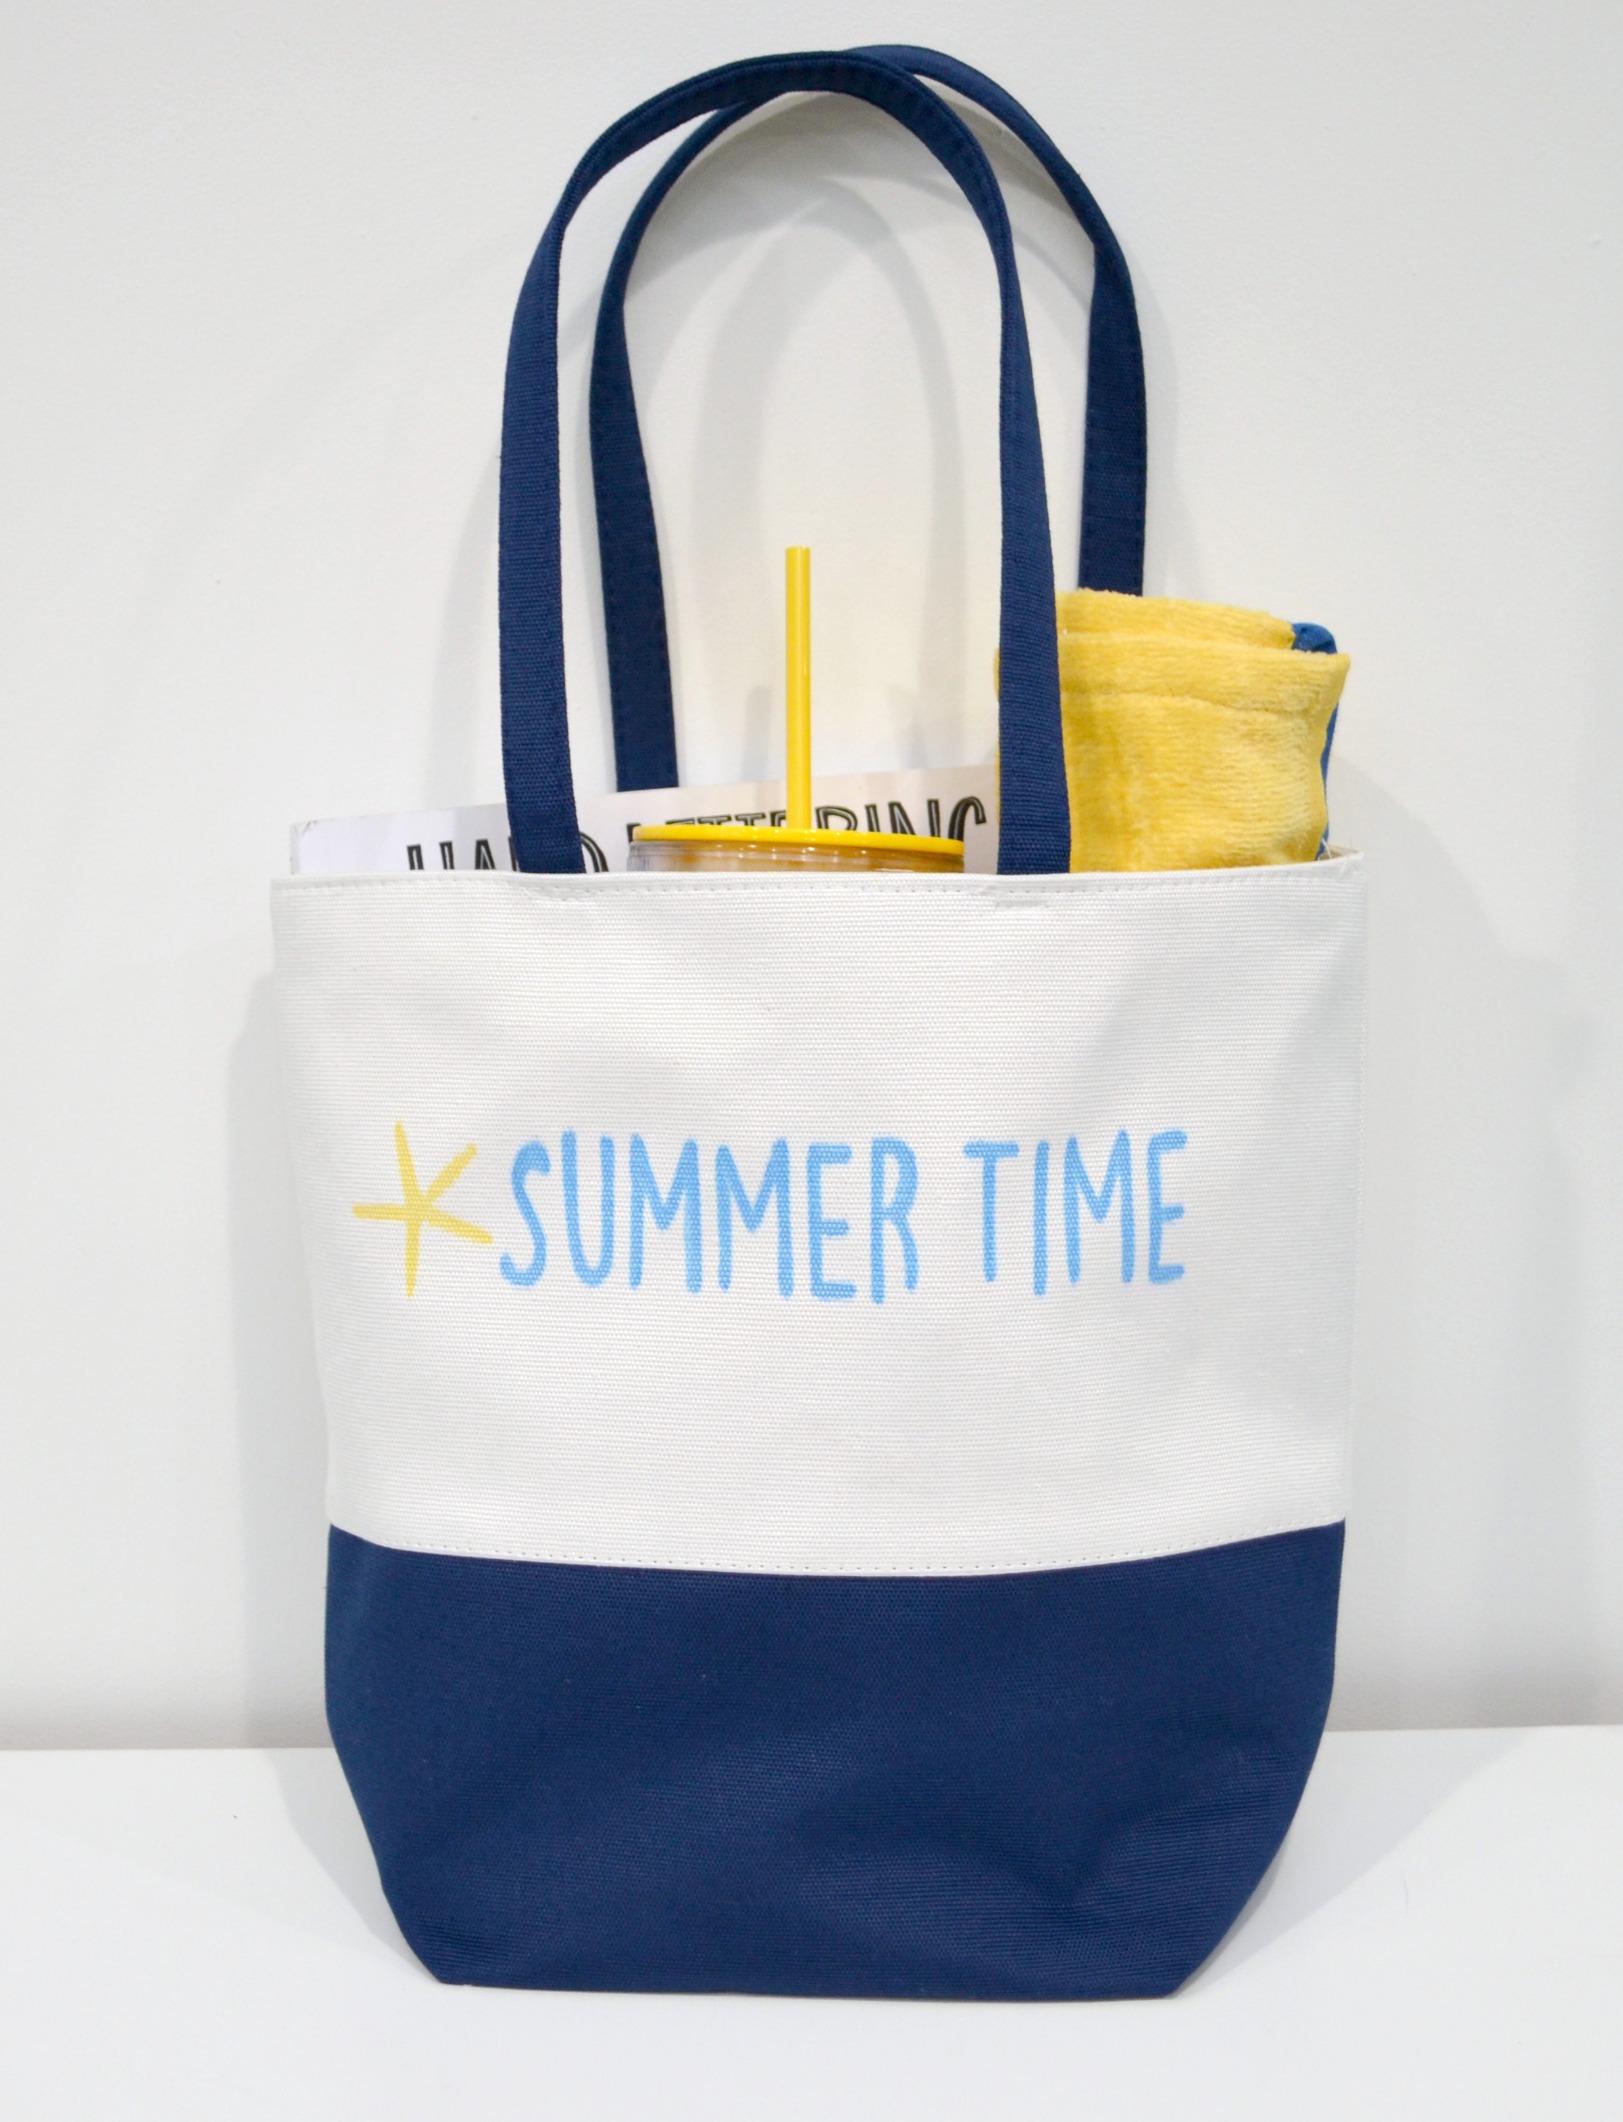 Stenciled Beach Bag Gift Idea